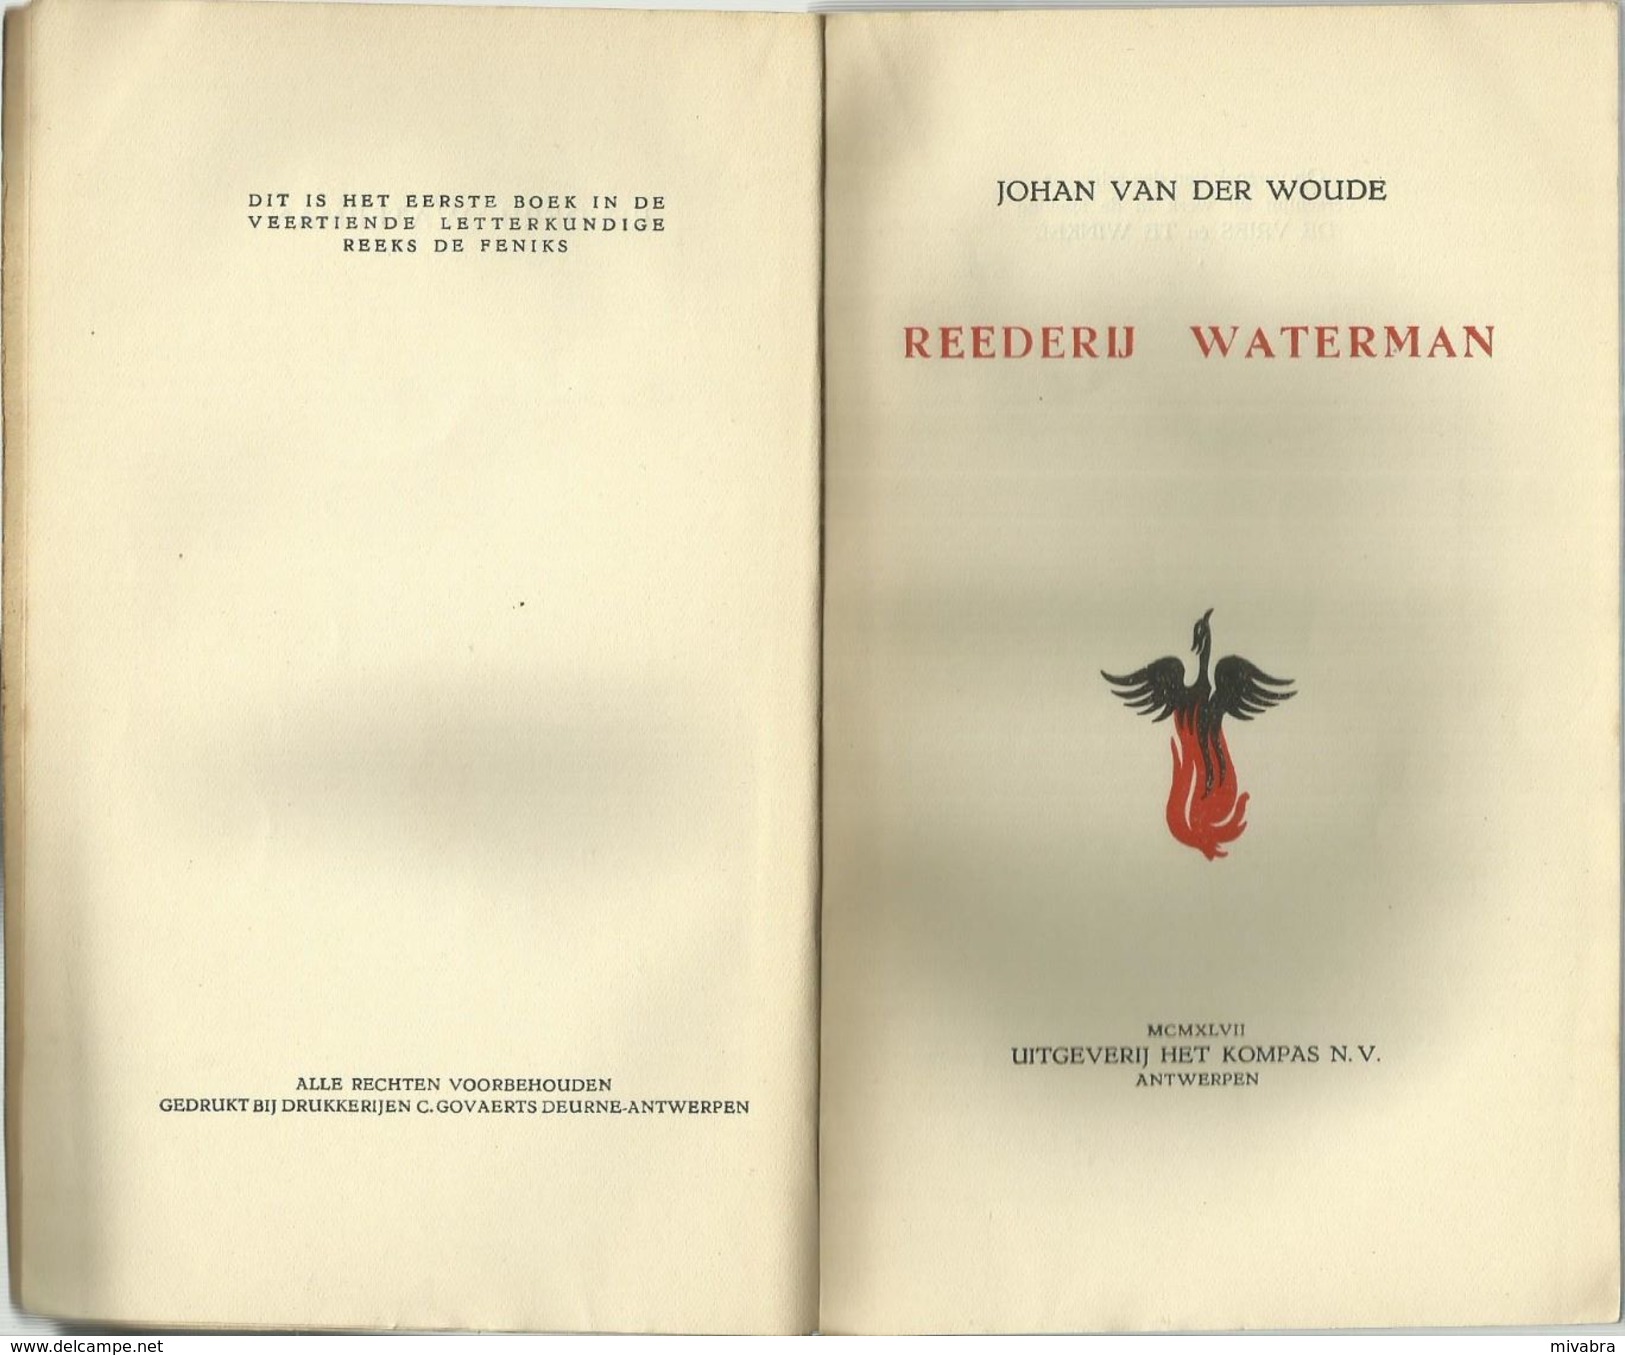 REEDERIJ WATERMAN - JOHAN VAN DER WOUDE - DE FENIKS 1947 - 1e Boek In De 14e Letterkundige Reeks - HET KOMPAS ANTWERPEN - Antique